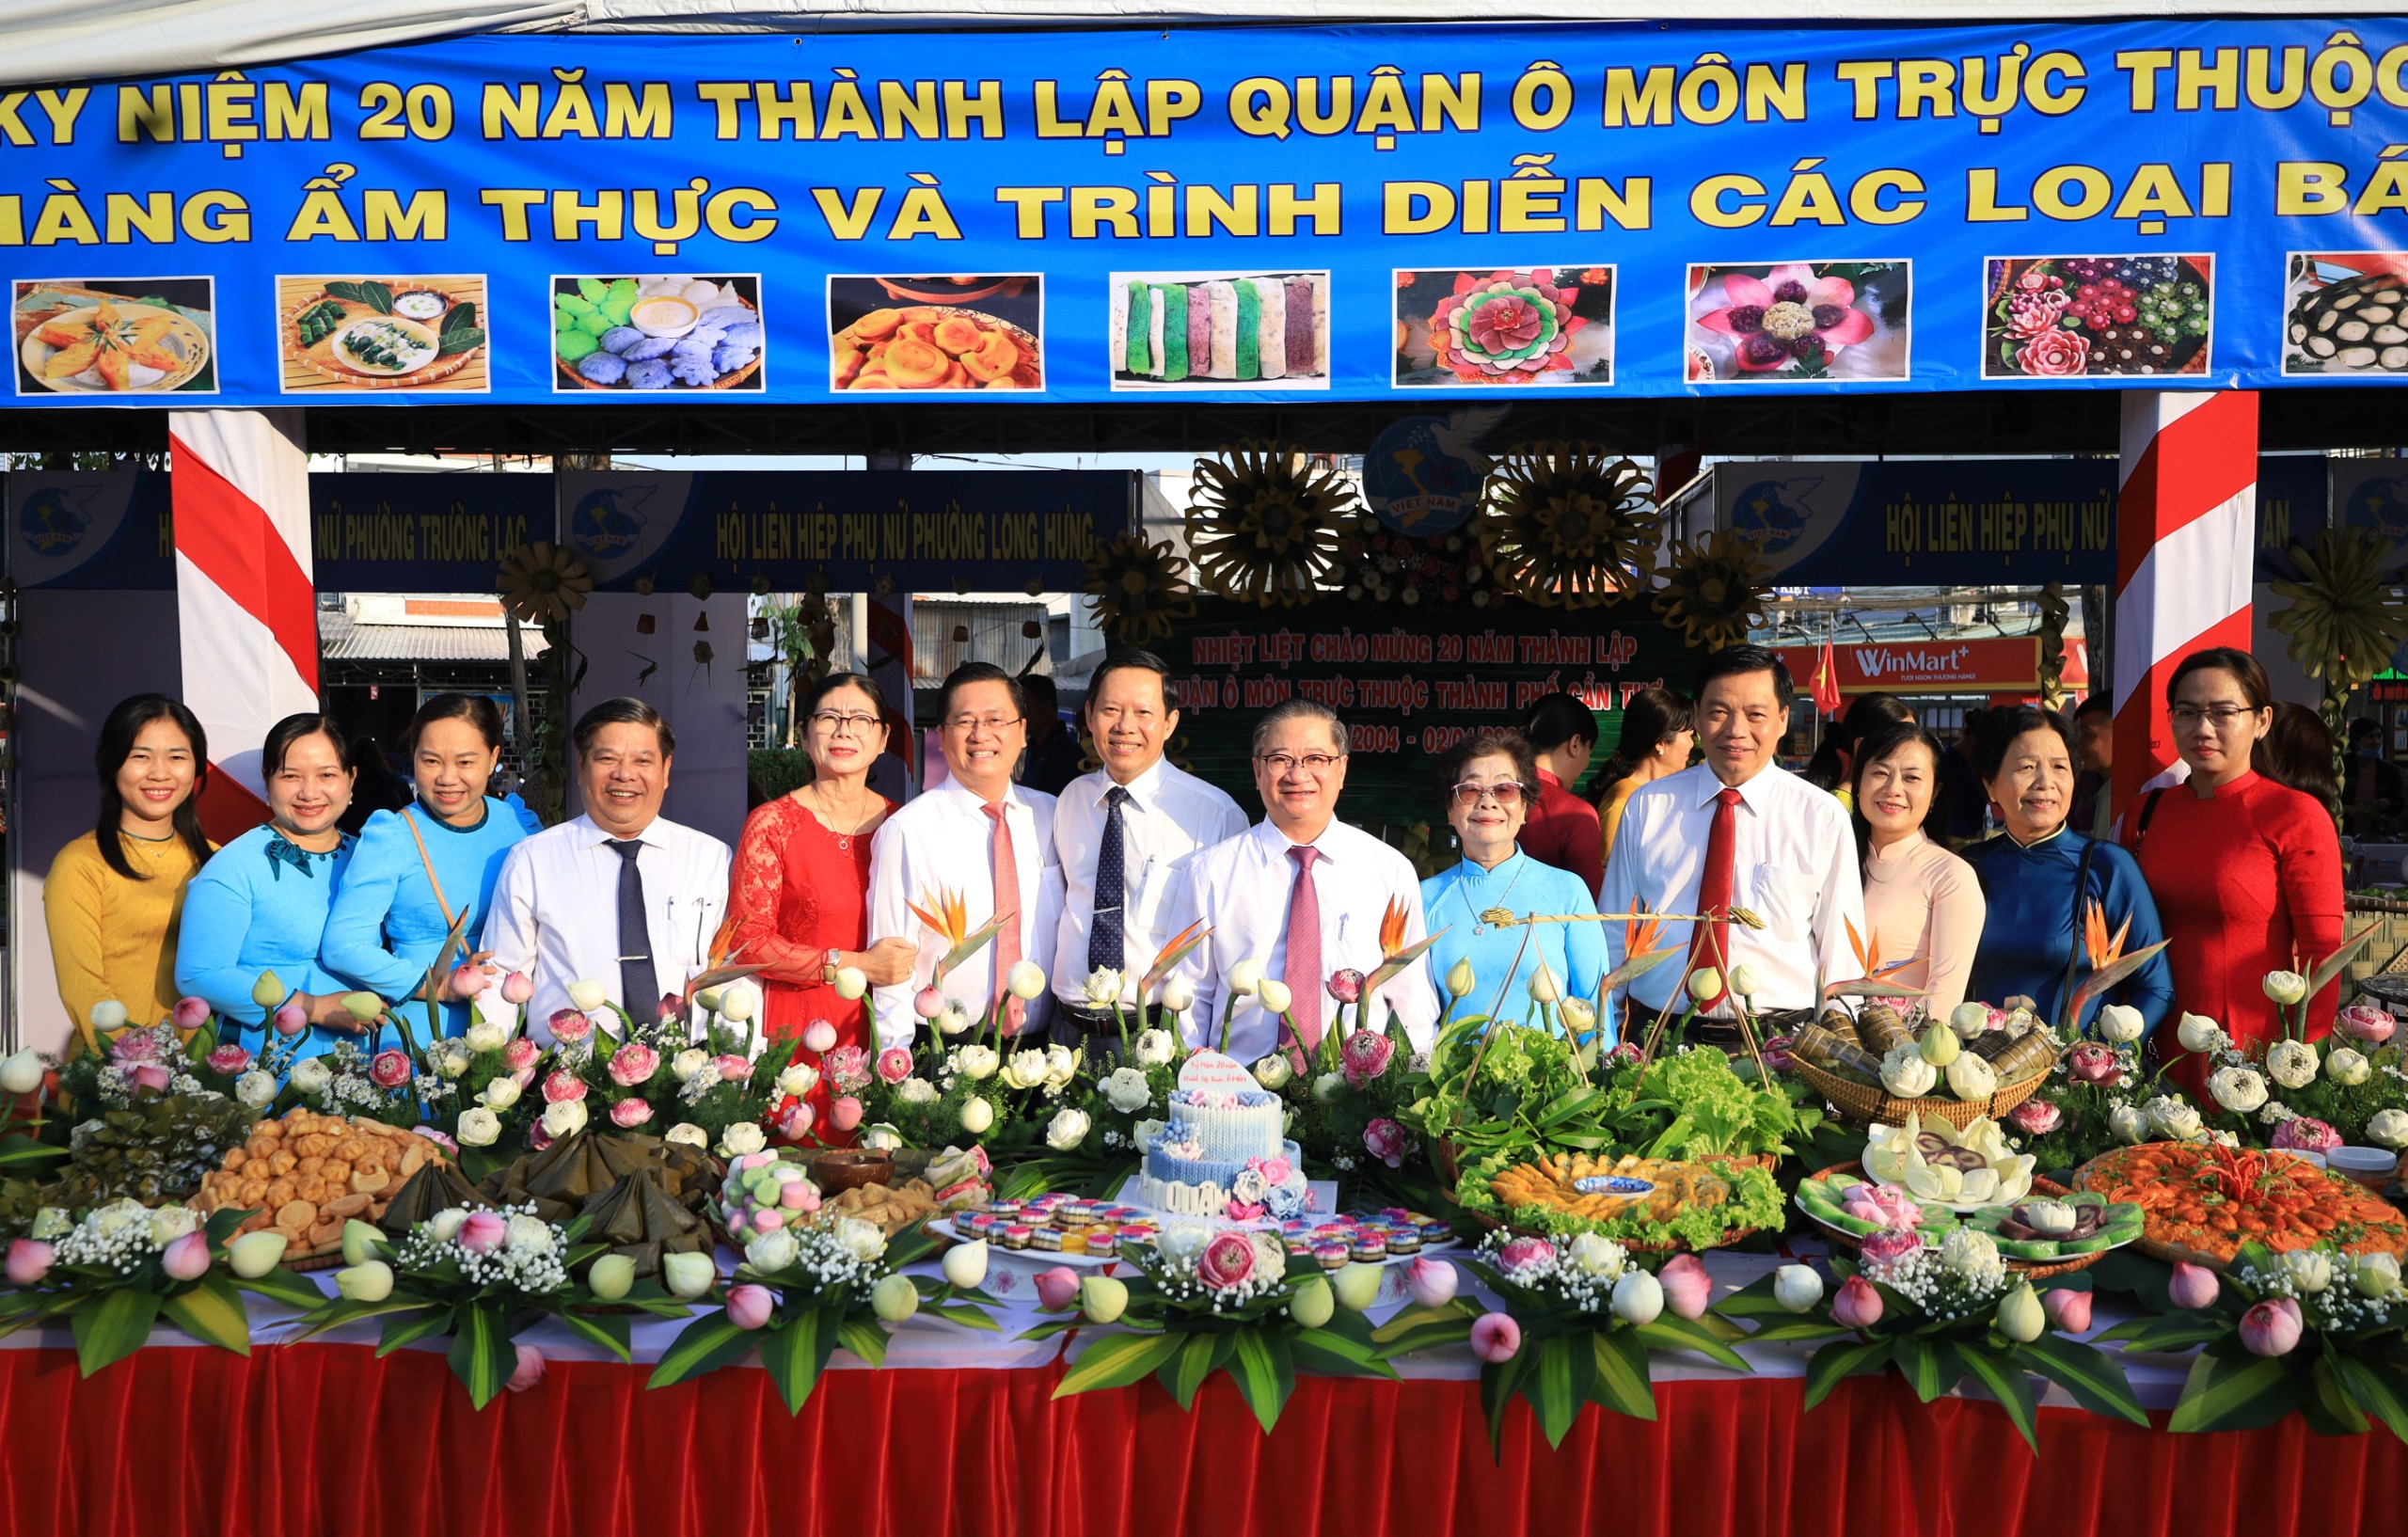 Ông Trần Việt Trường (thứ 6 từ phải qua) – Phó Bí thư Thành ủy, Chủ tịch UBND TP. Cần Thơ và các đại biểu chụp hình lưu niệm tại buổi lễ.